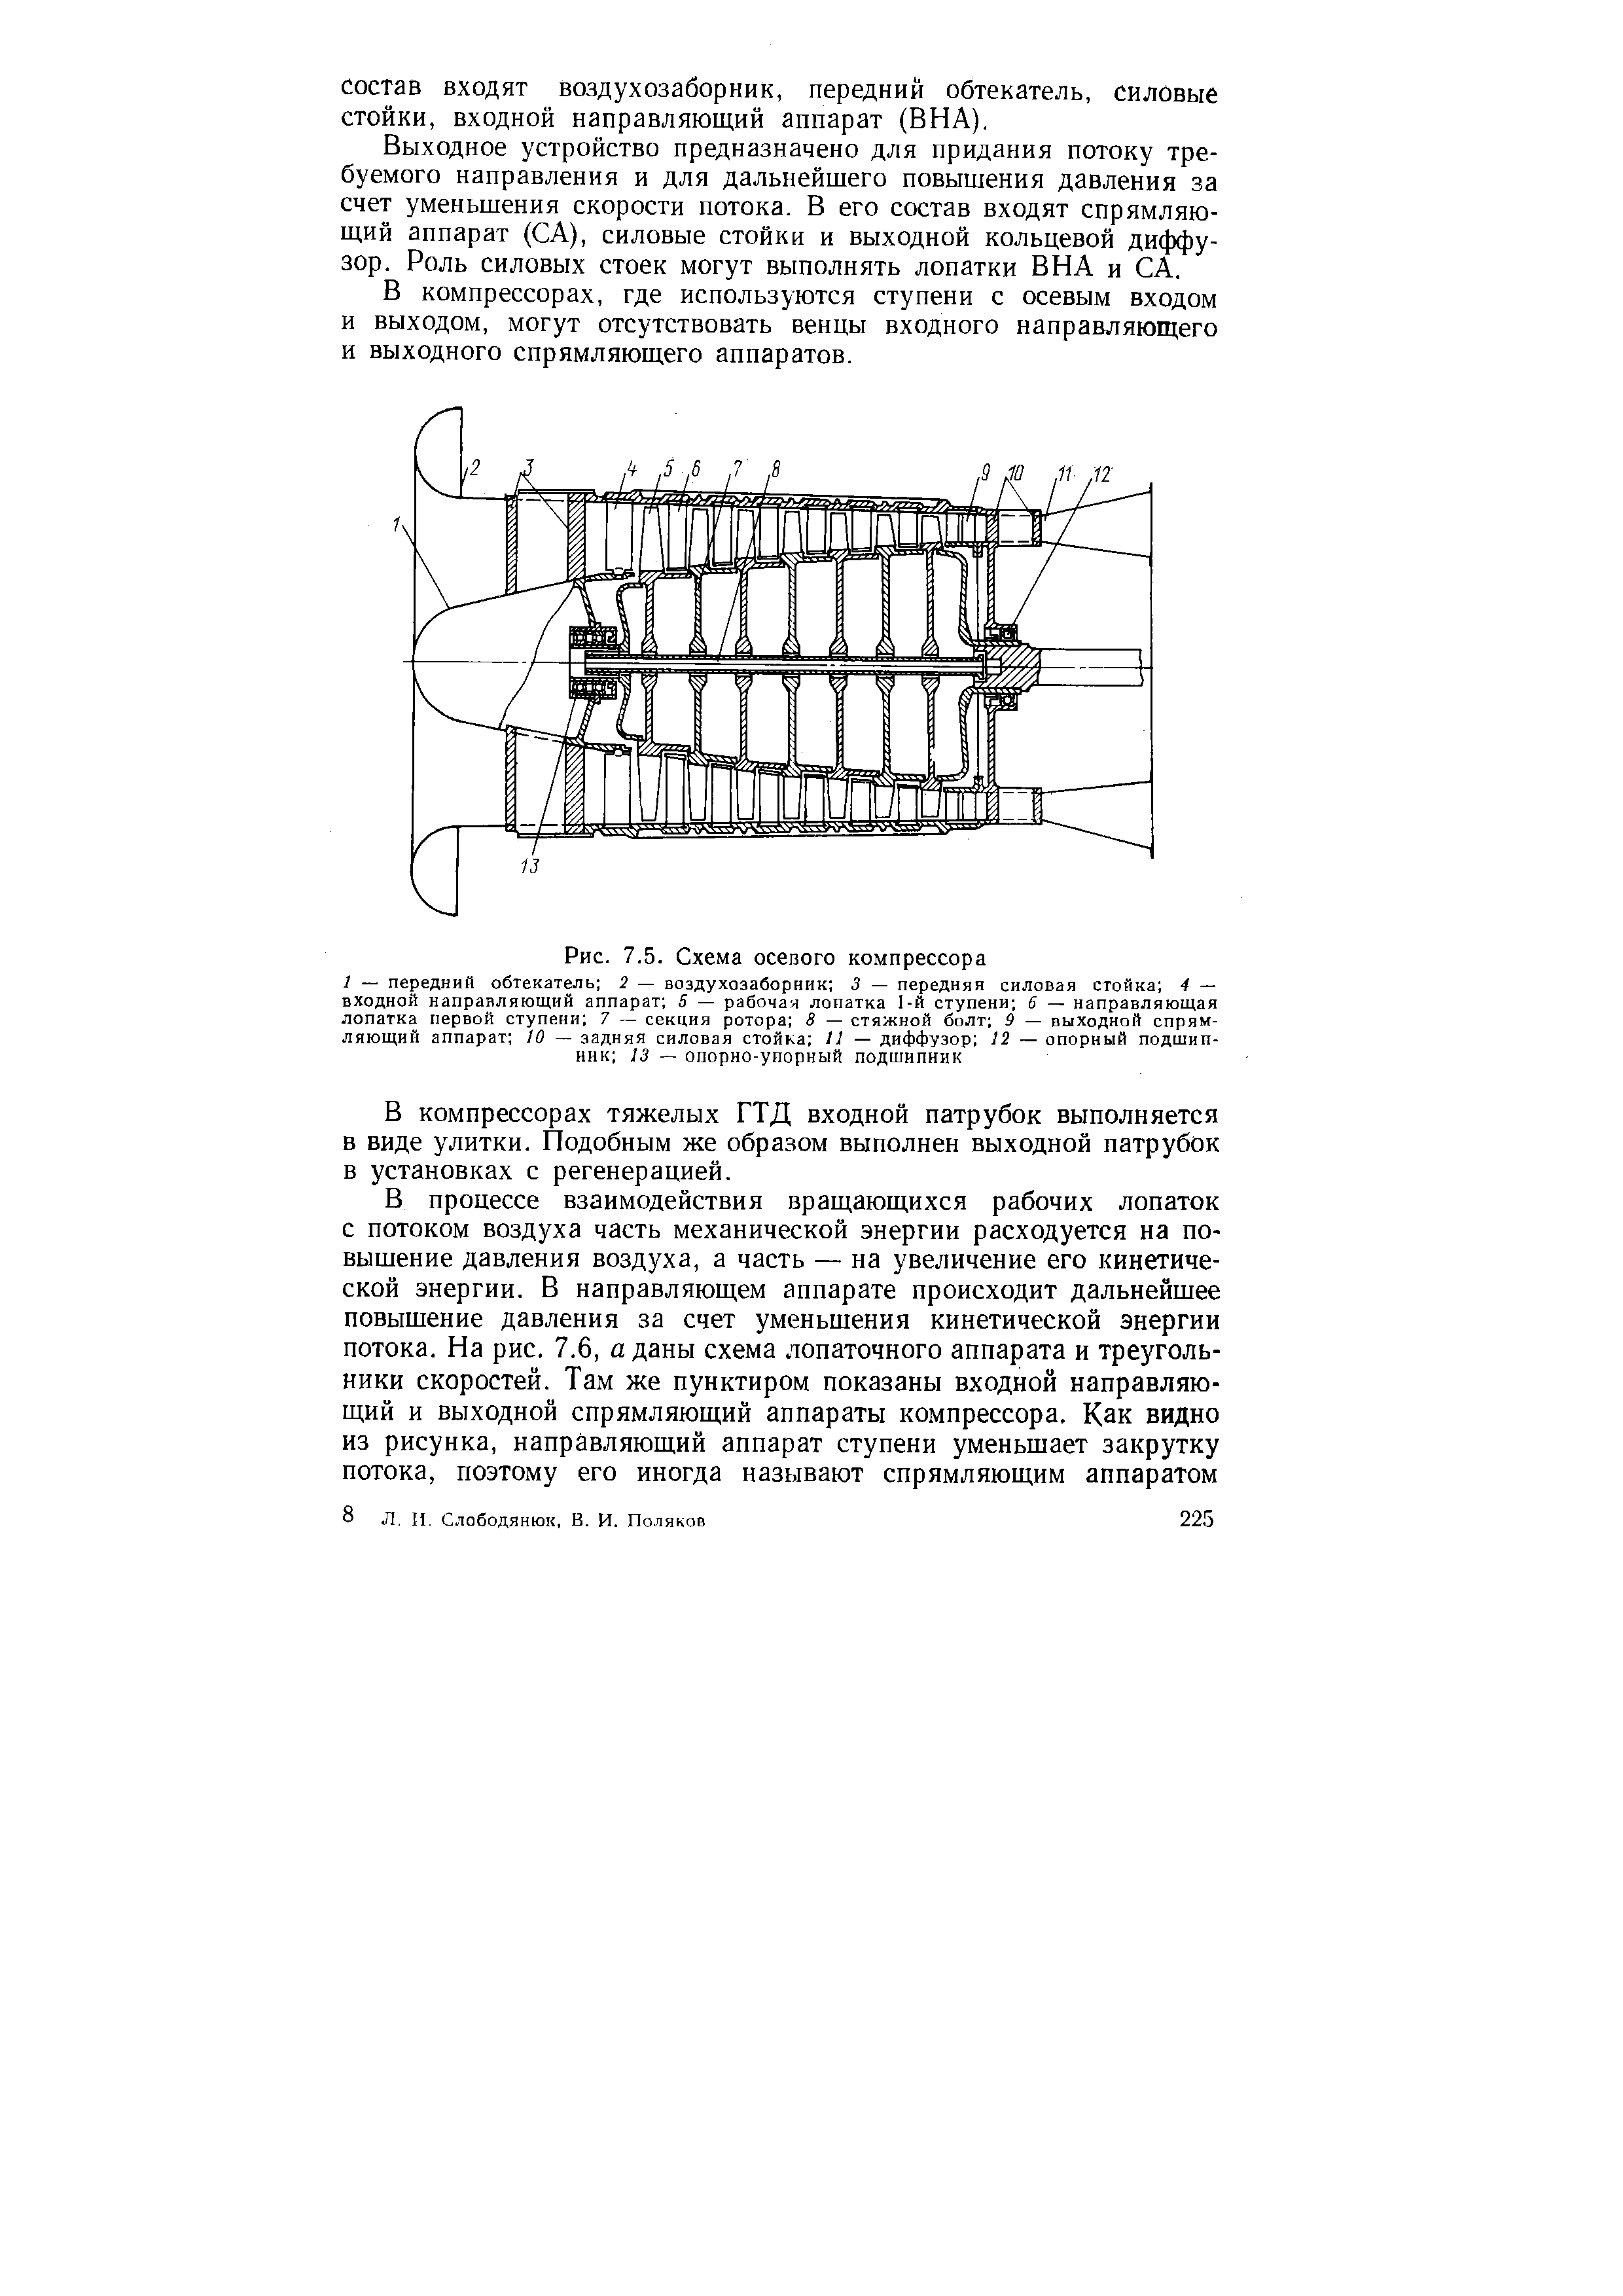 Рис. 7.5. Схема осевого компрессора
